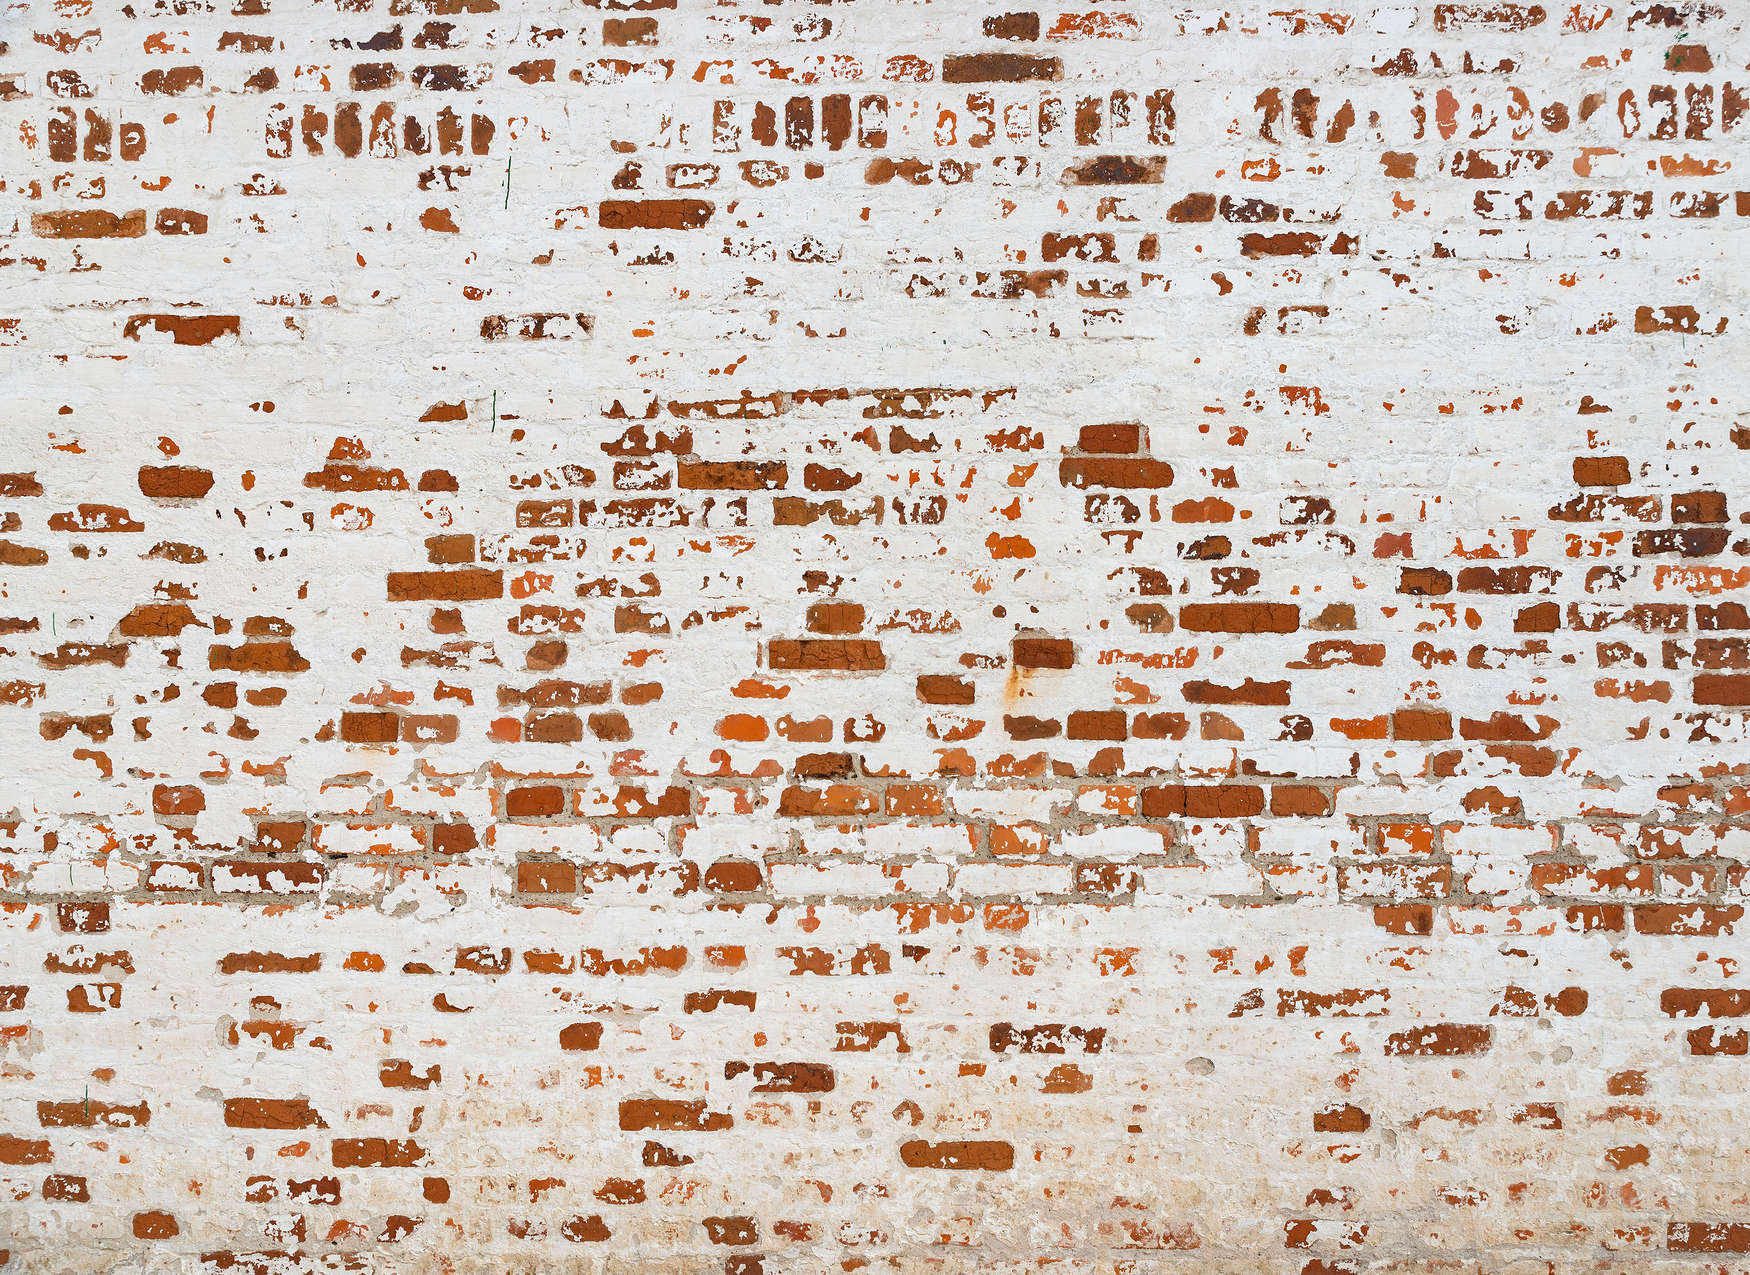             Digital behang Bakstenen muur met 3D-effect - Wit, Bruin, Rood
        